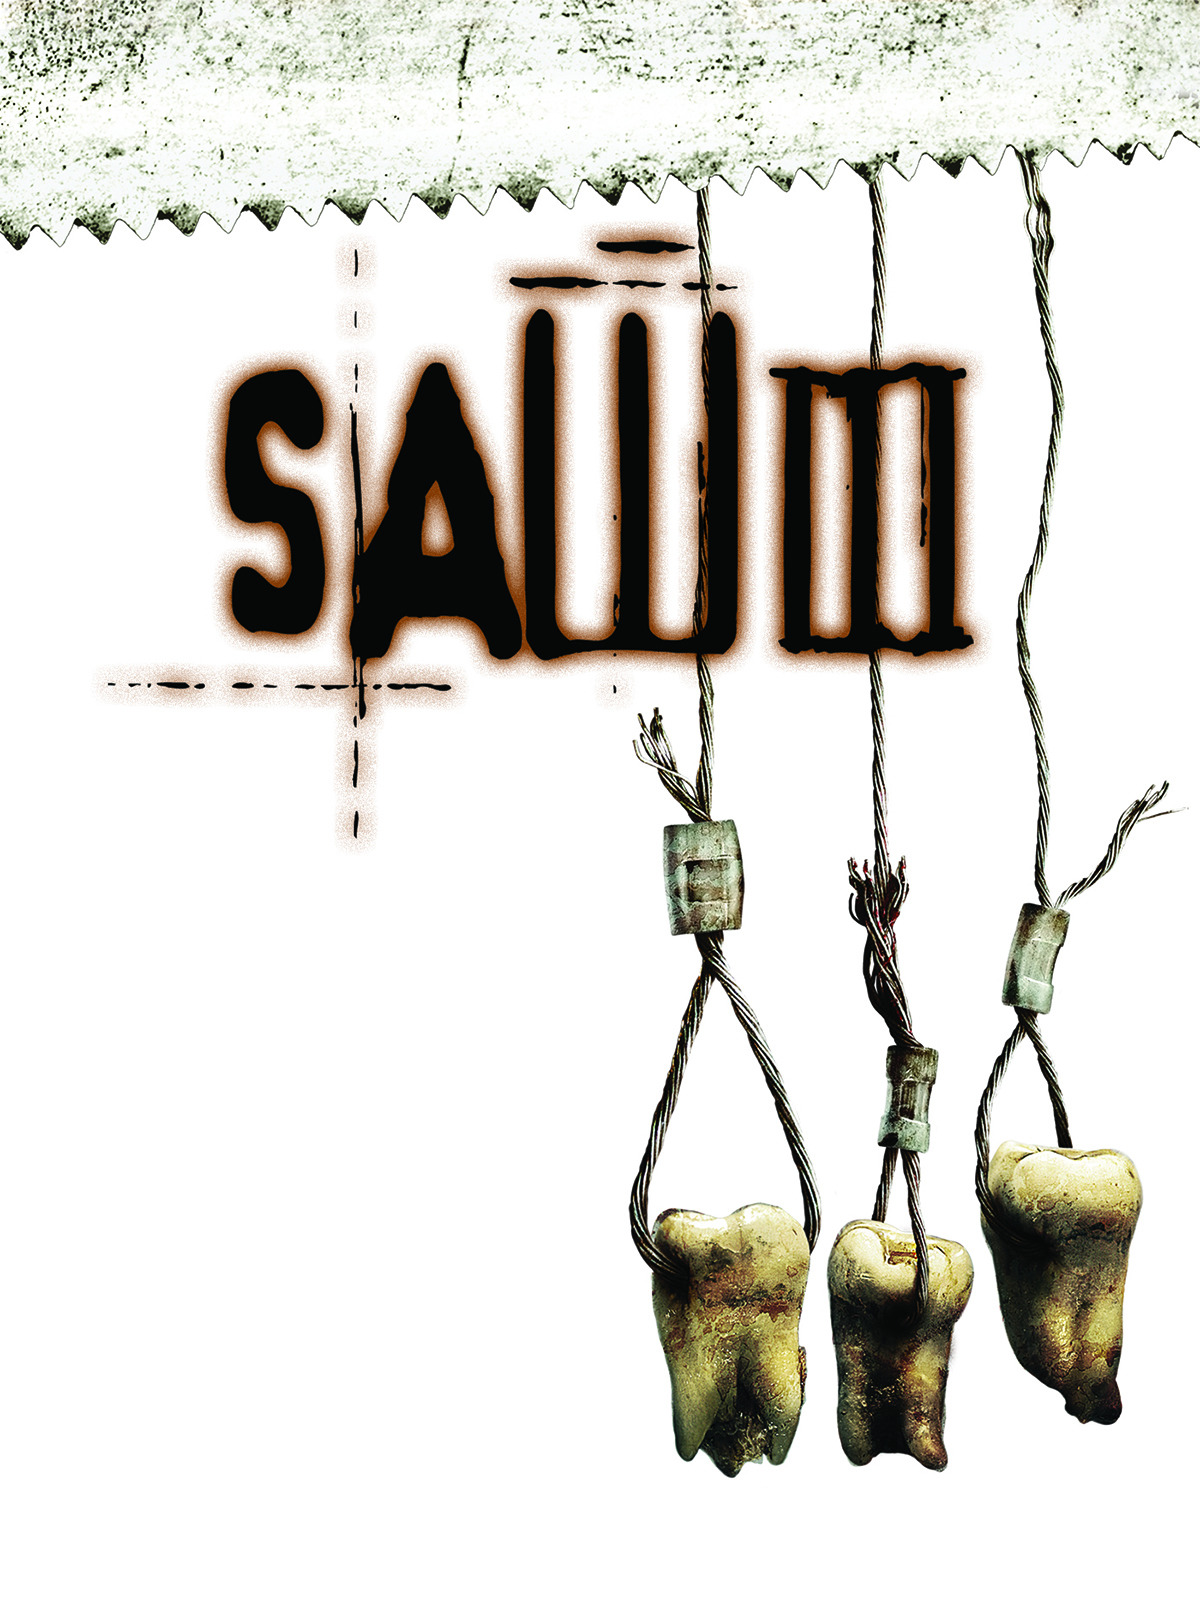 หนังน่าดู : Saw III เกม ตัด-ต่อ-ตาย 3